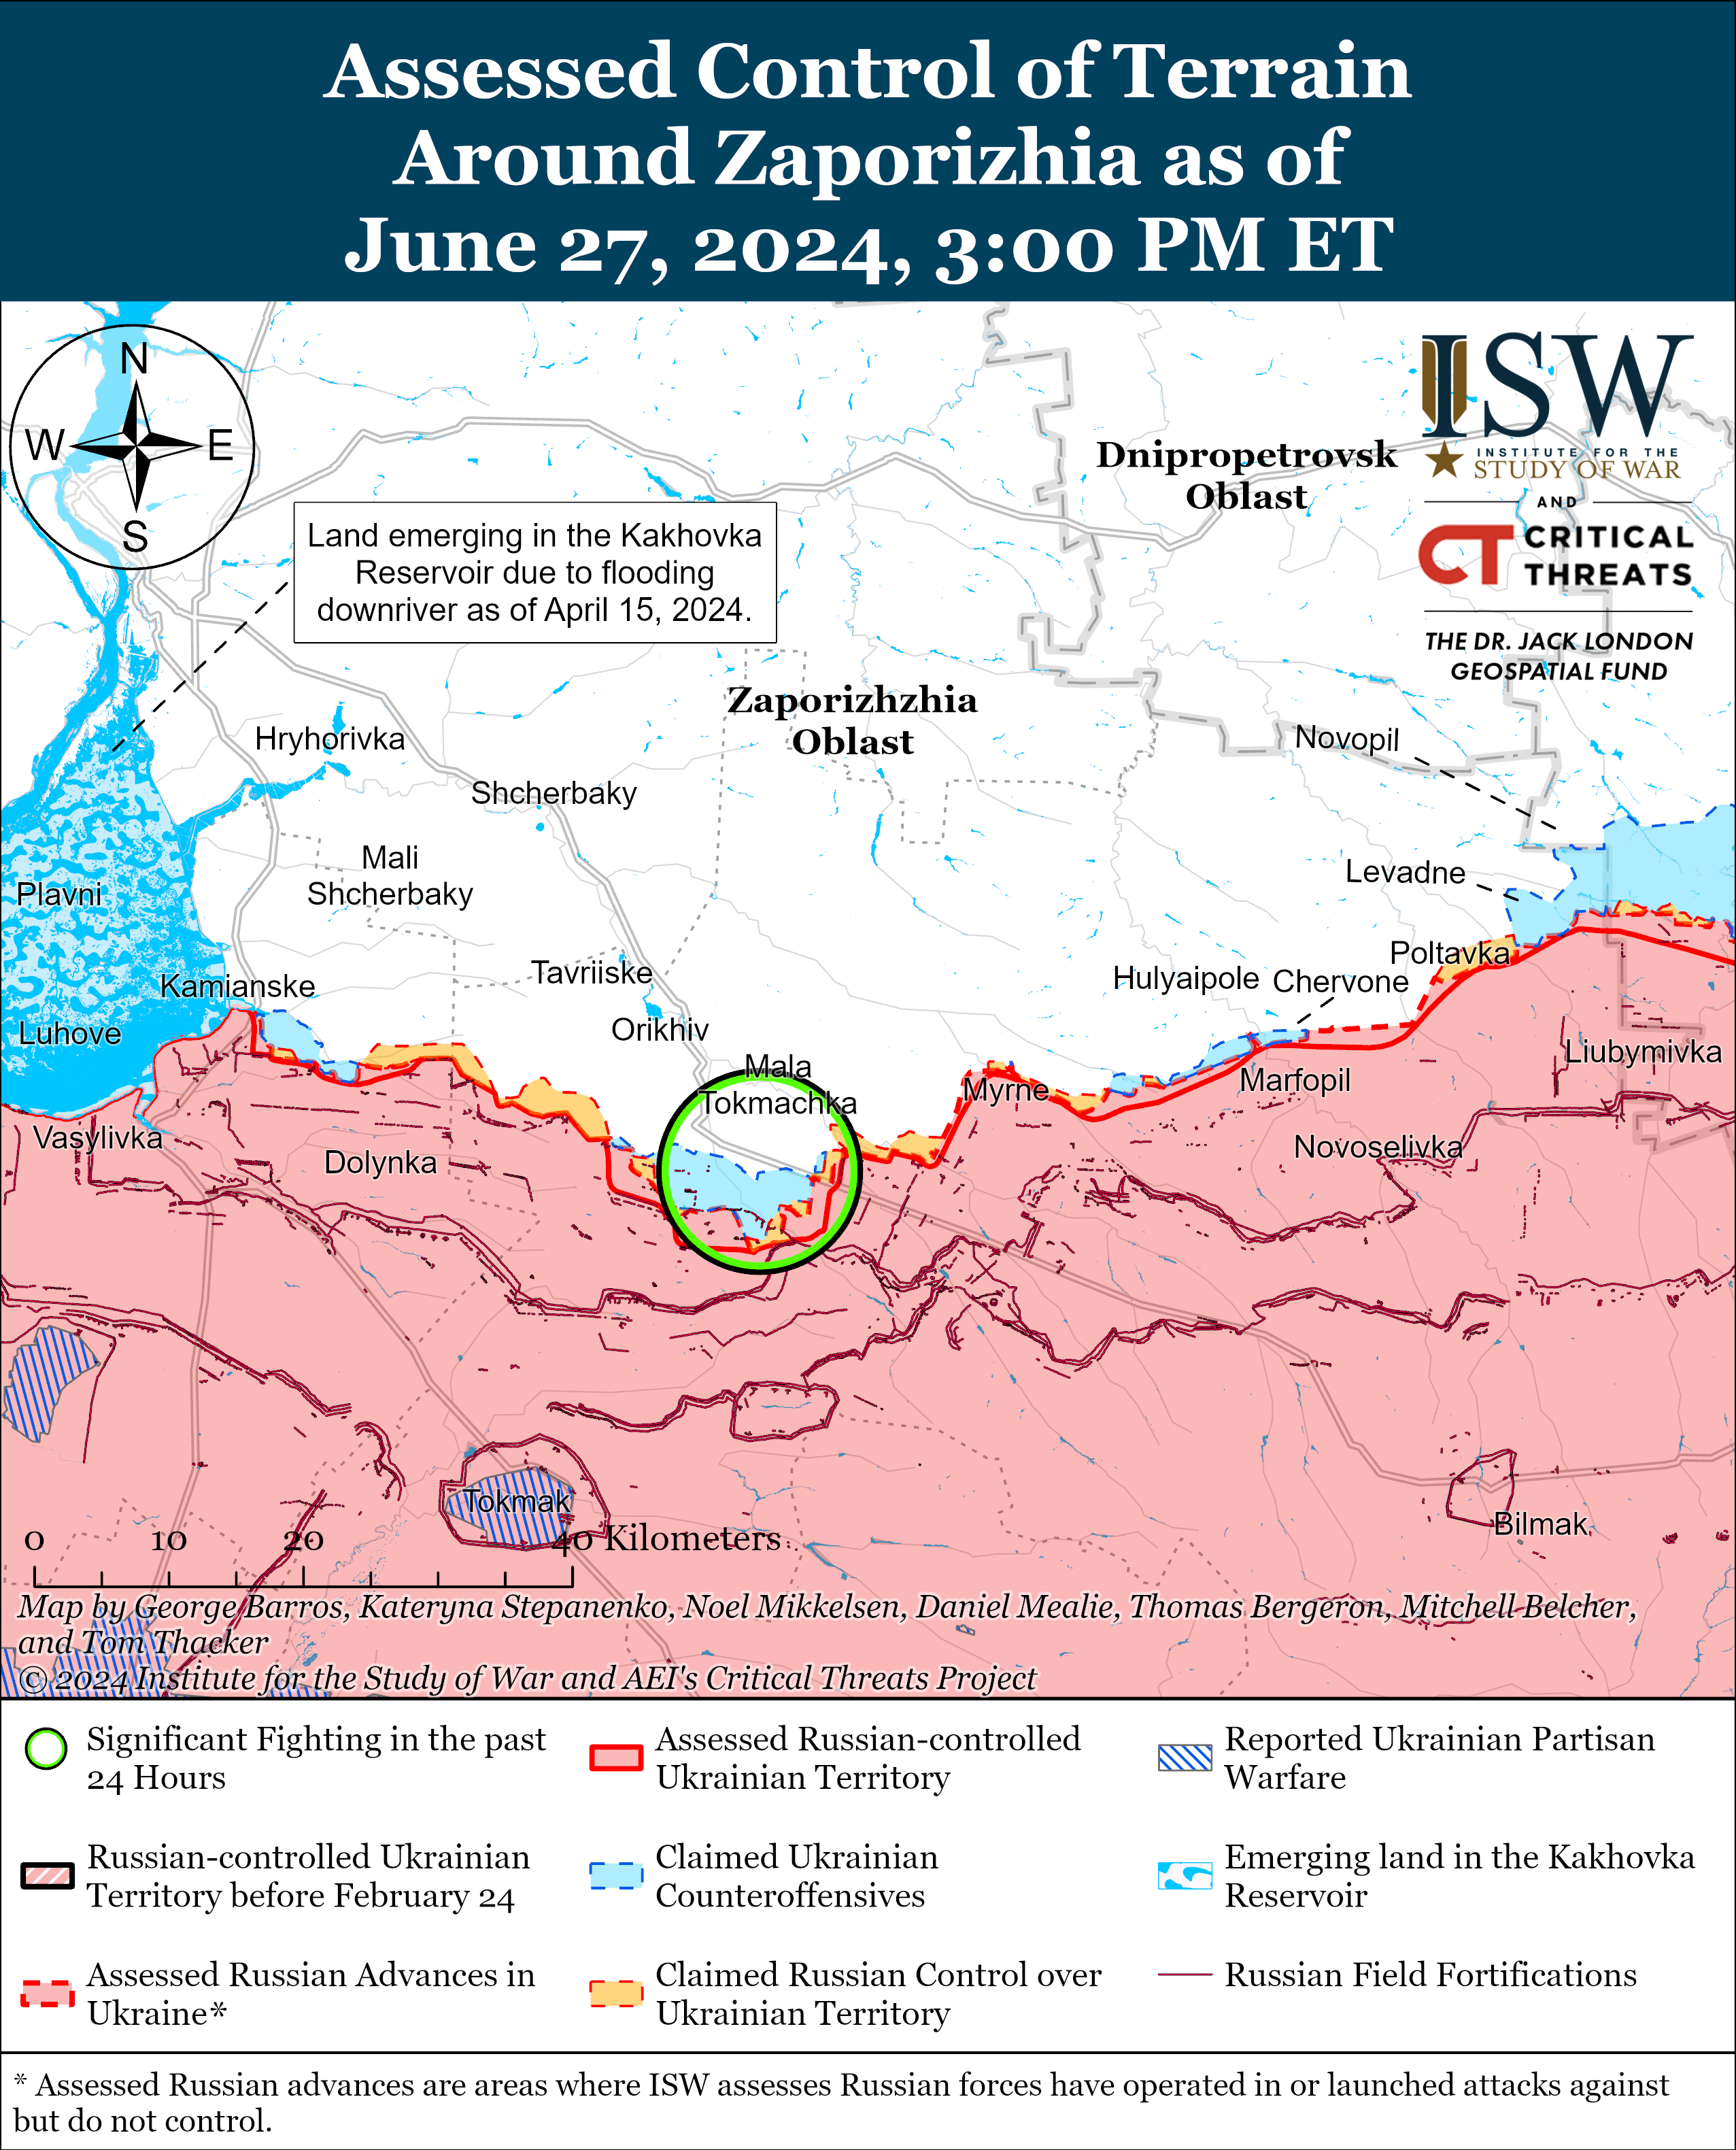 Штурм на новом направлении в Харьковской области - часть замысла РФ: карты ISW